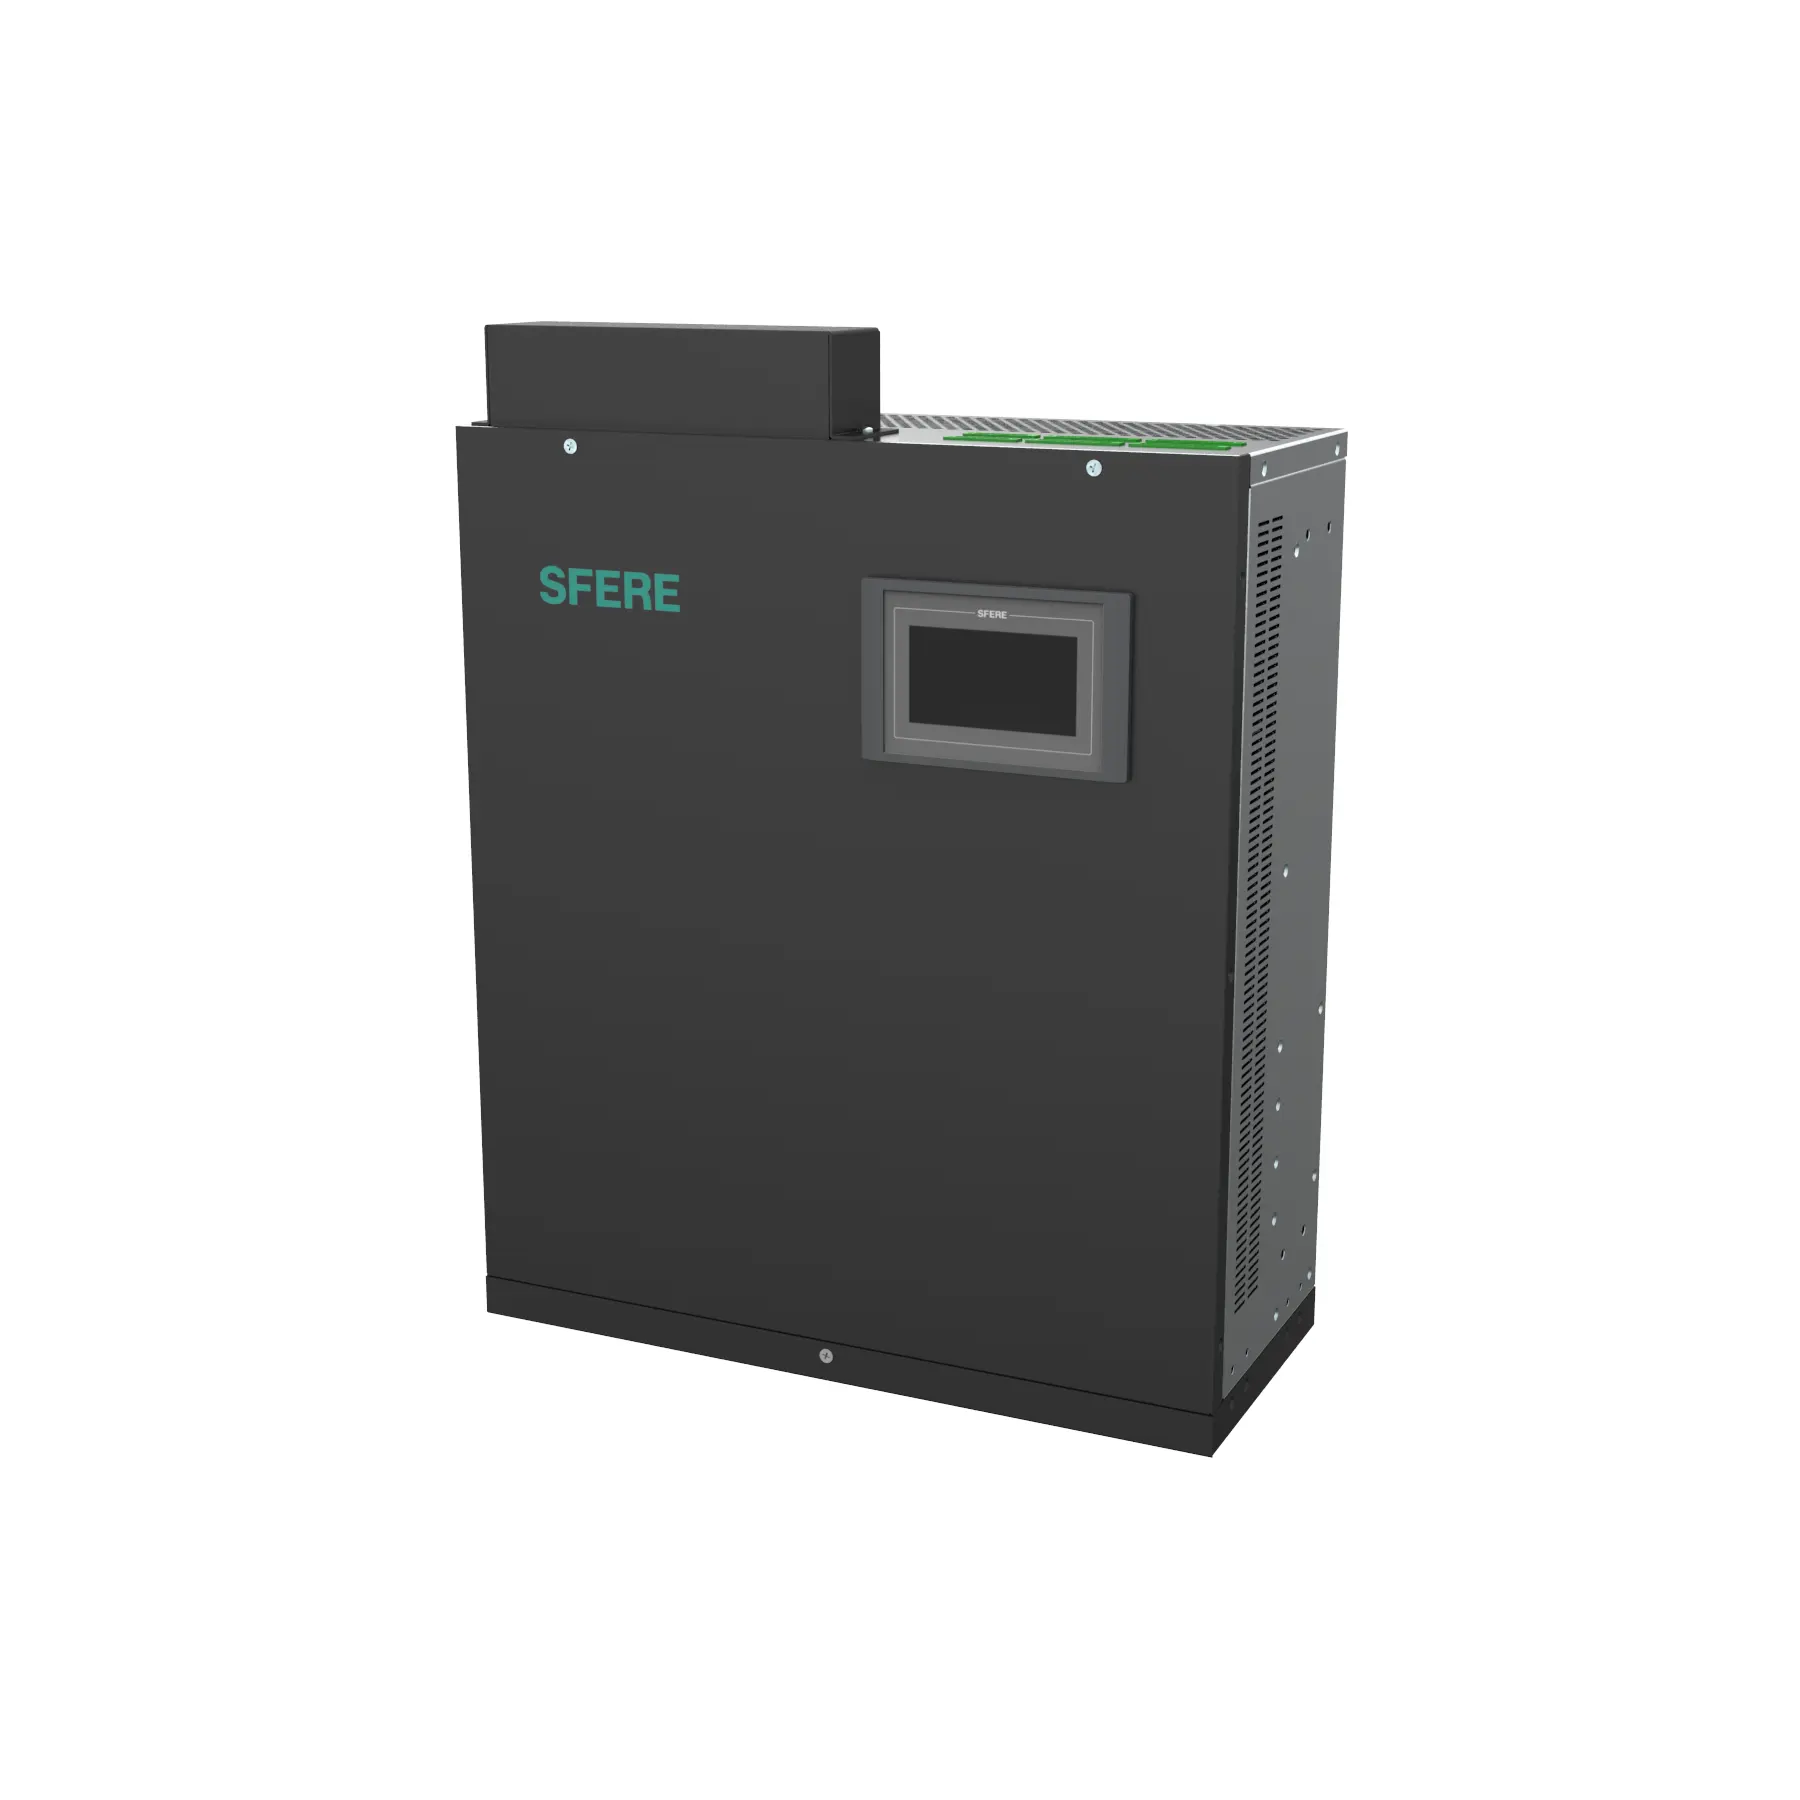 Elecnova SFR-SVG-generador de var estático, compensación reactiva antiarmónica